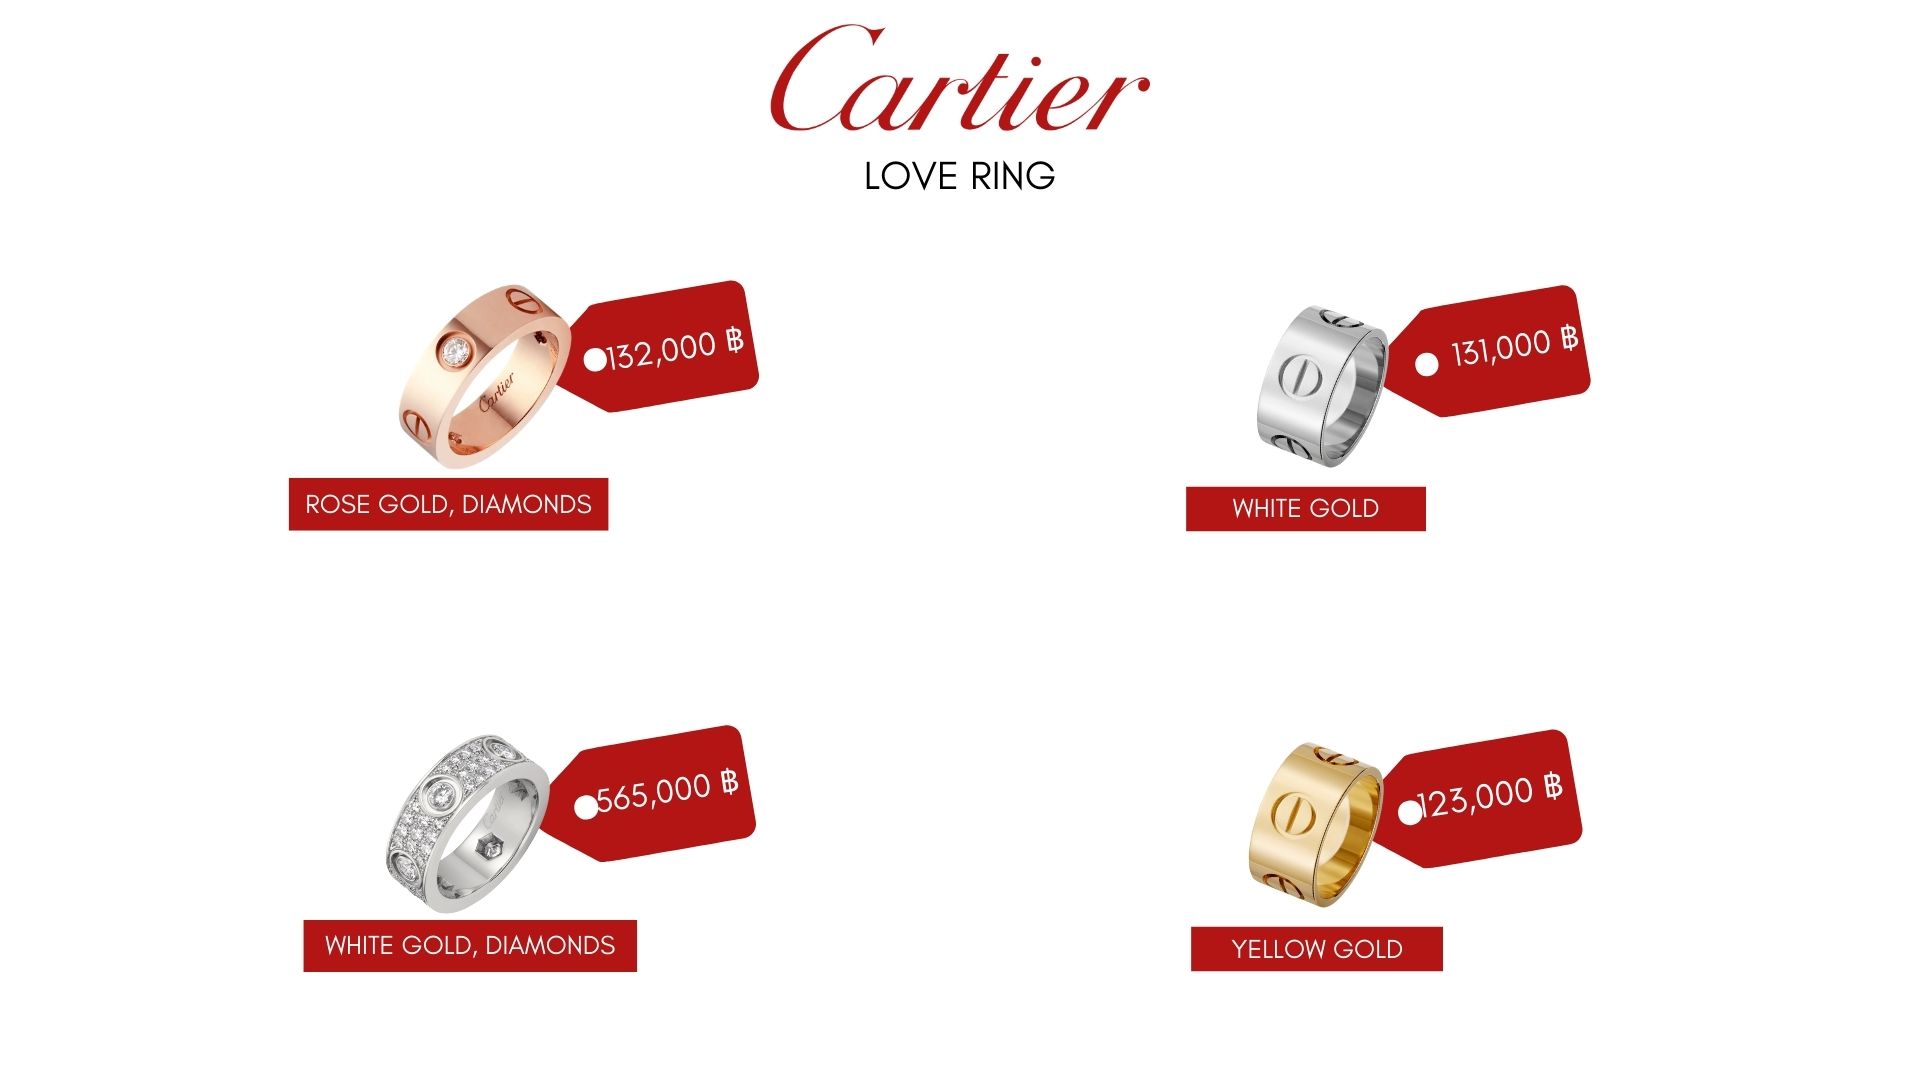 เทียบแหวน 2 รุ่น ที่ทุกคนตามหา Dior vs Cartier